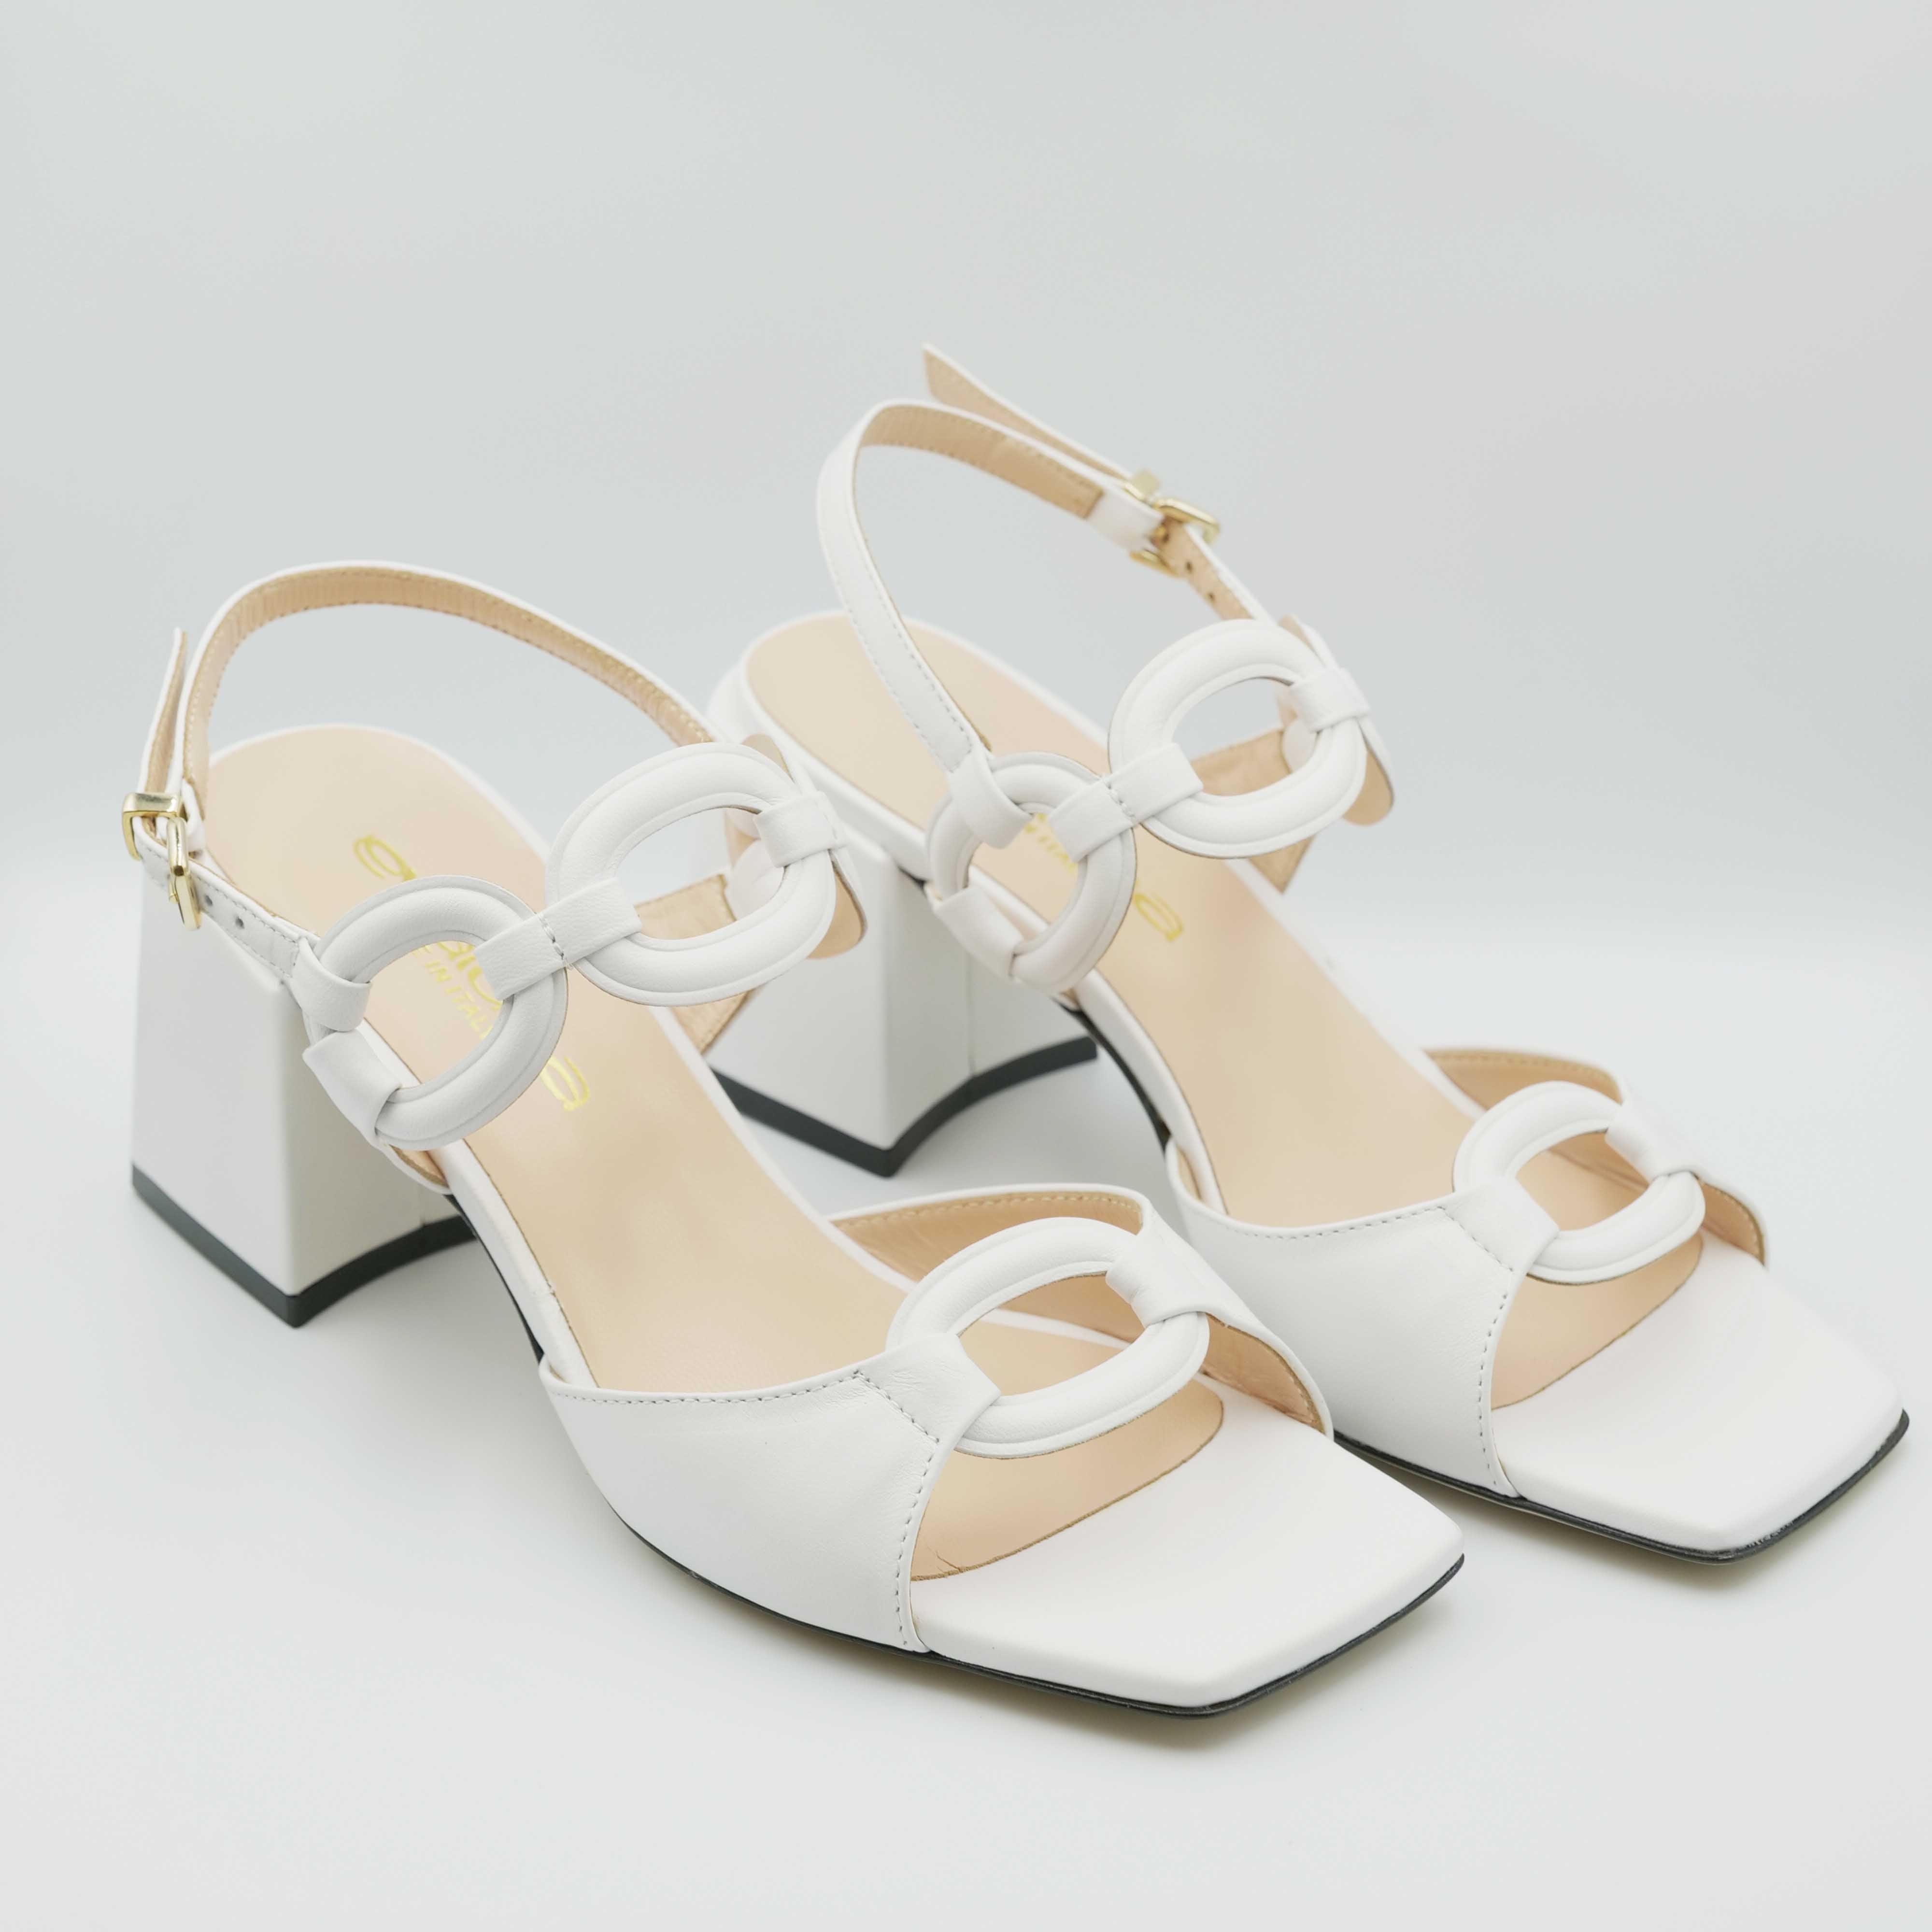 Eva Luna - Sandalo con tacco largo in pelle e cinturino alla caviglia colore bianco